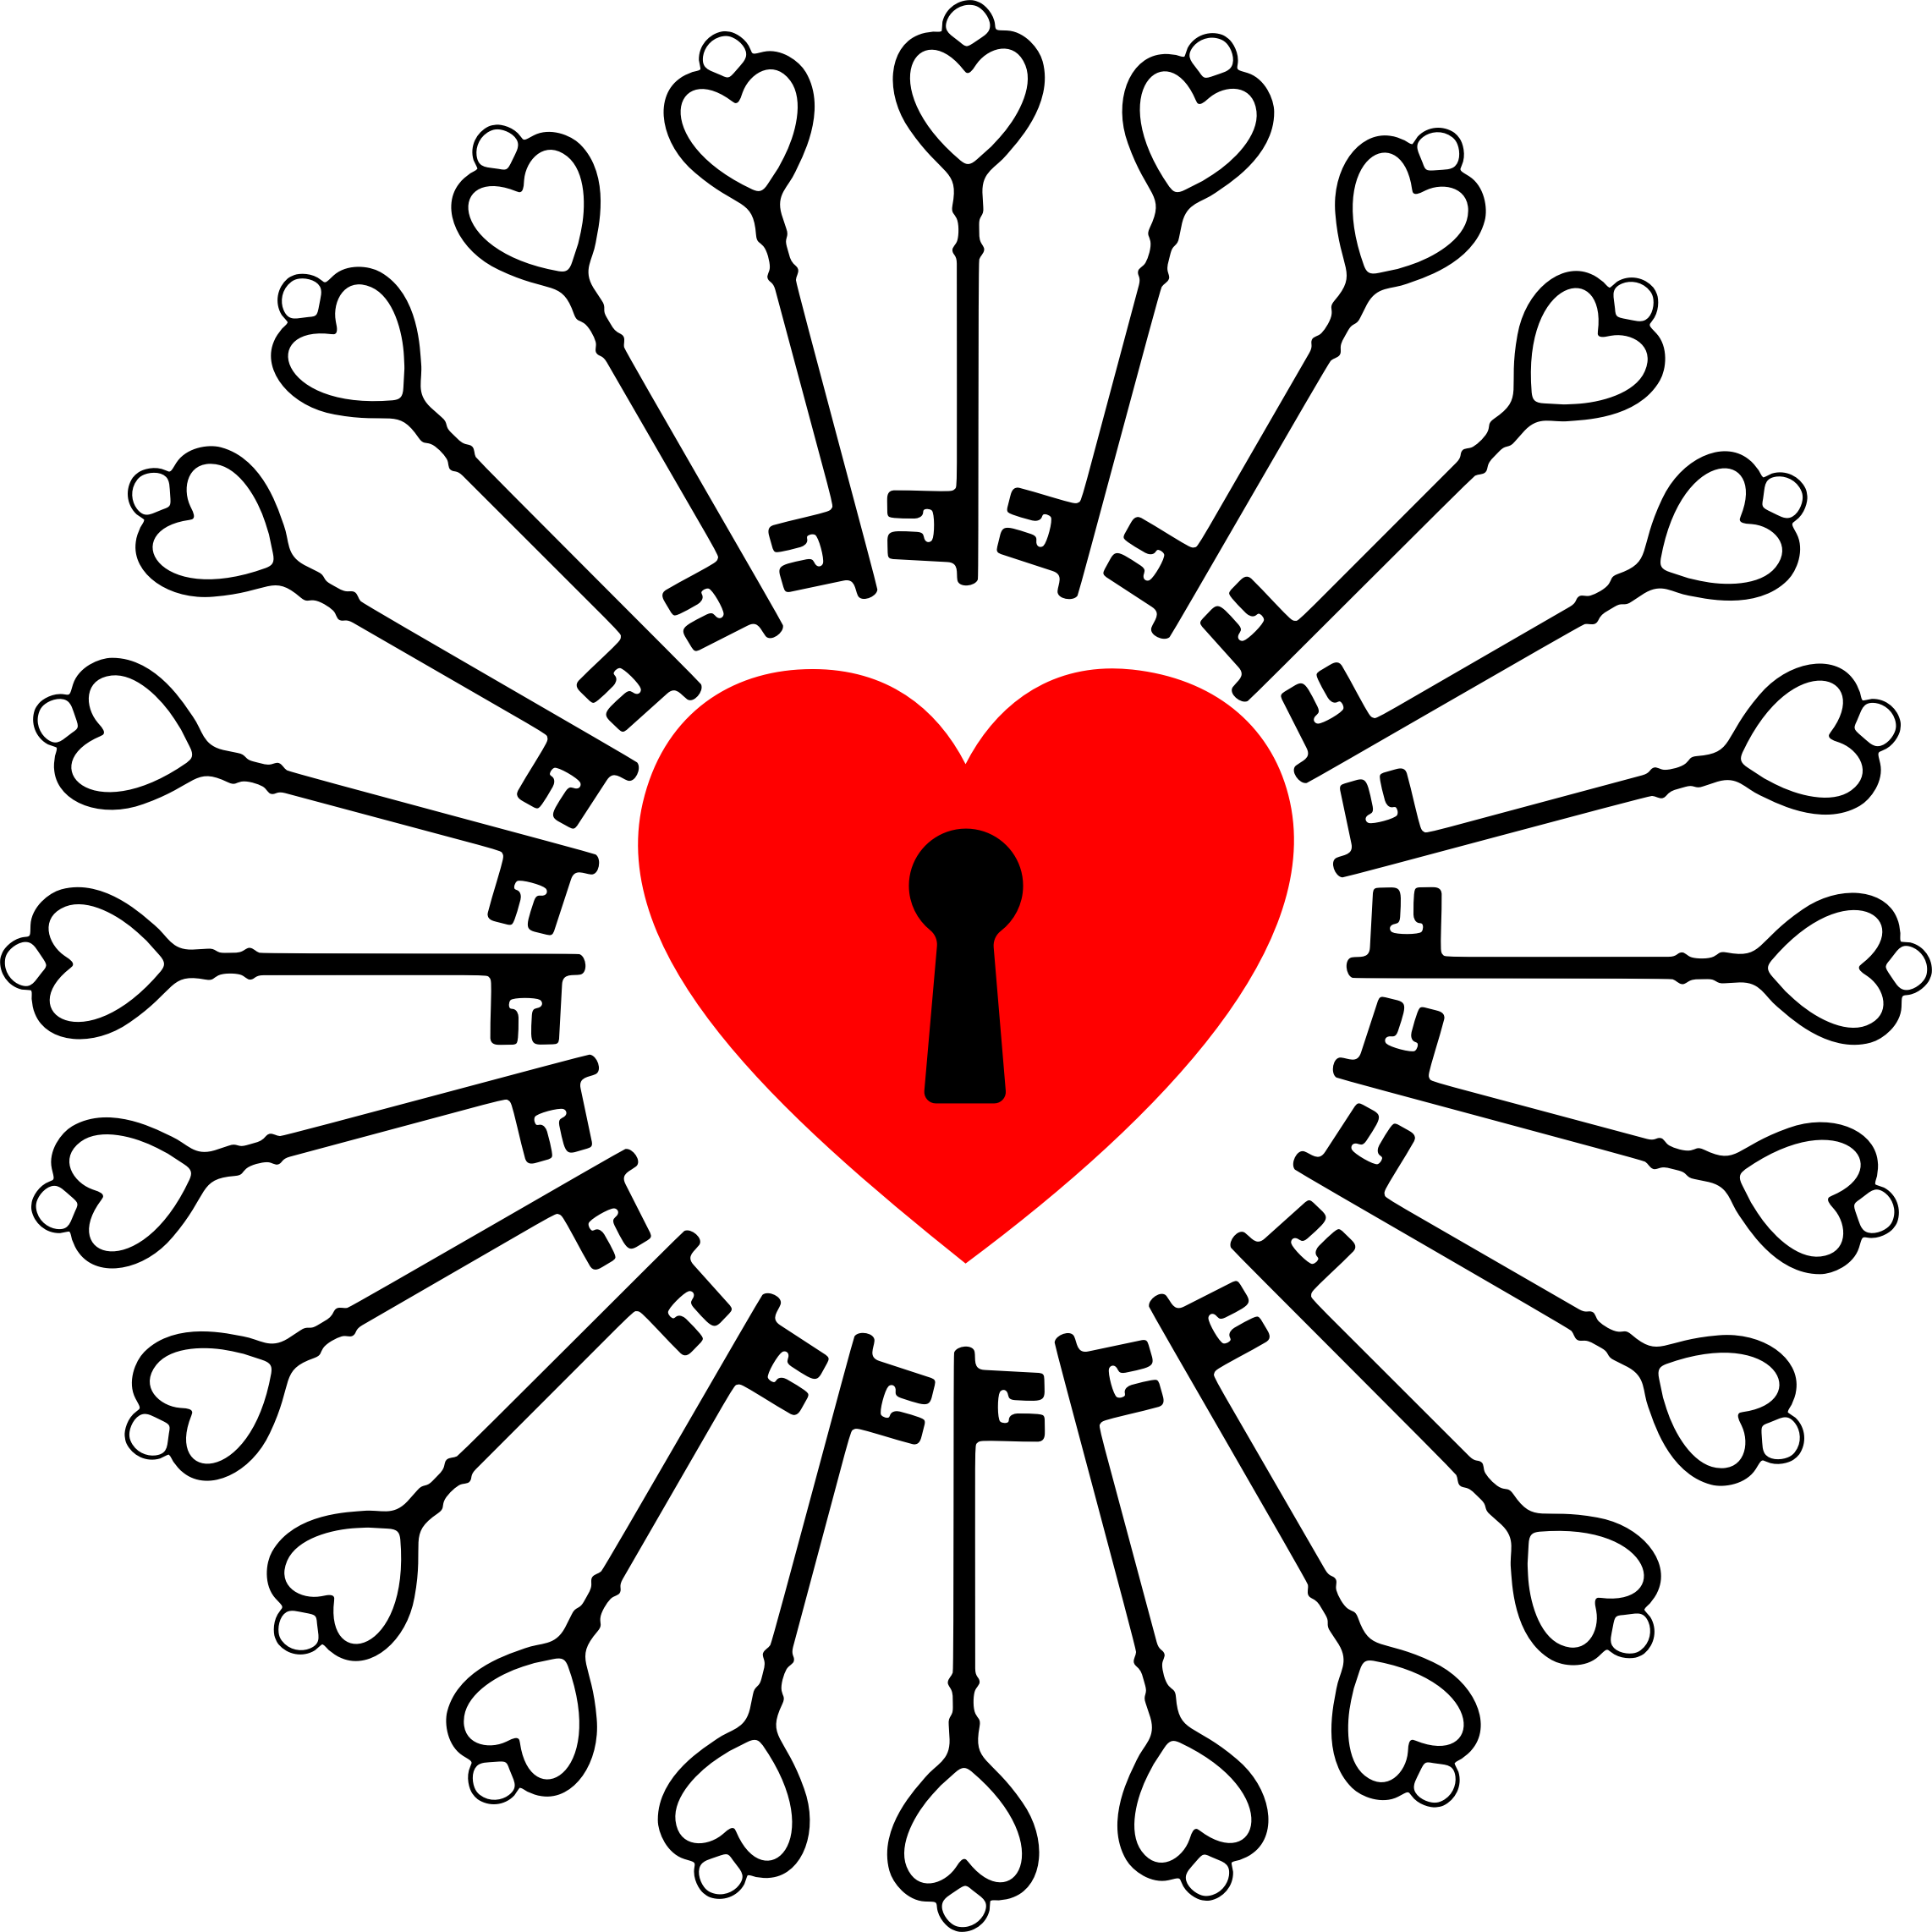 Heart And Keys - Password To Unlock Heart (2284x2284)